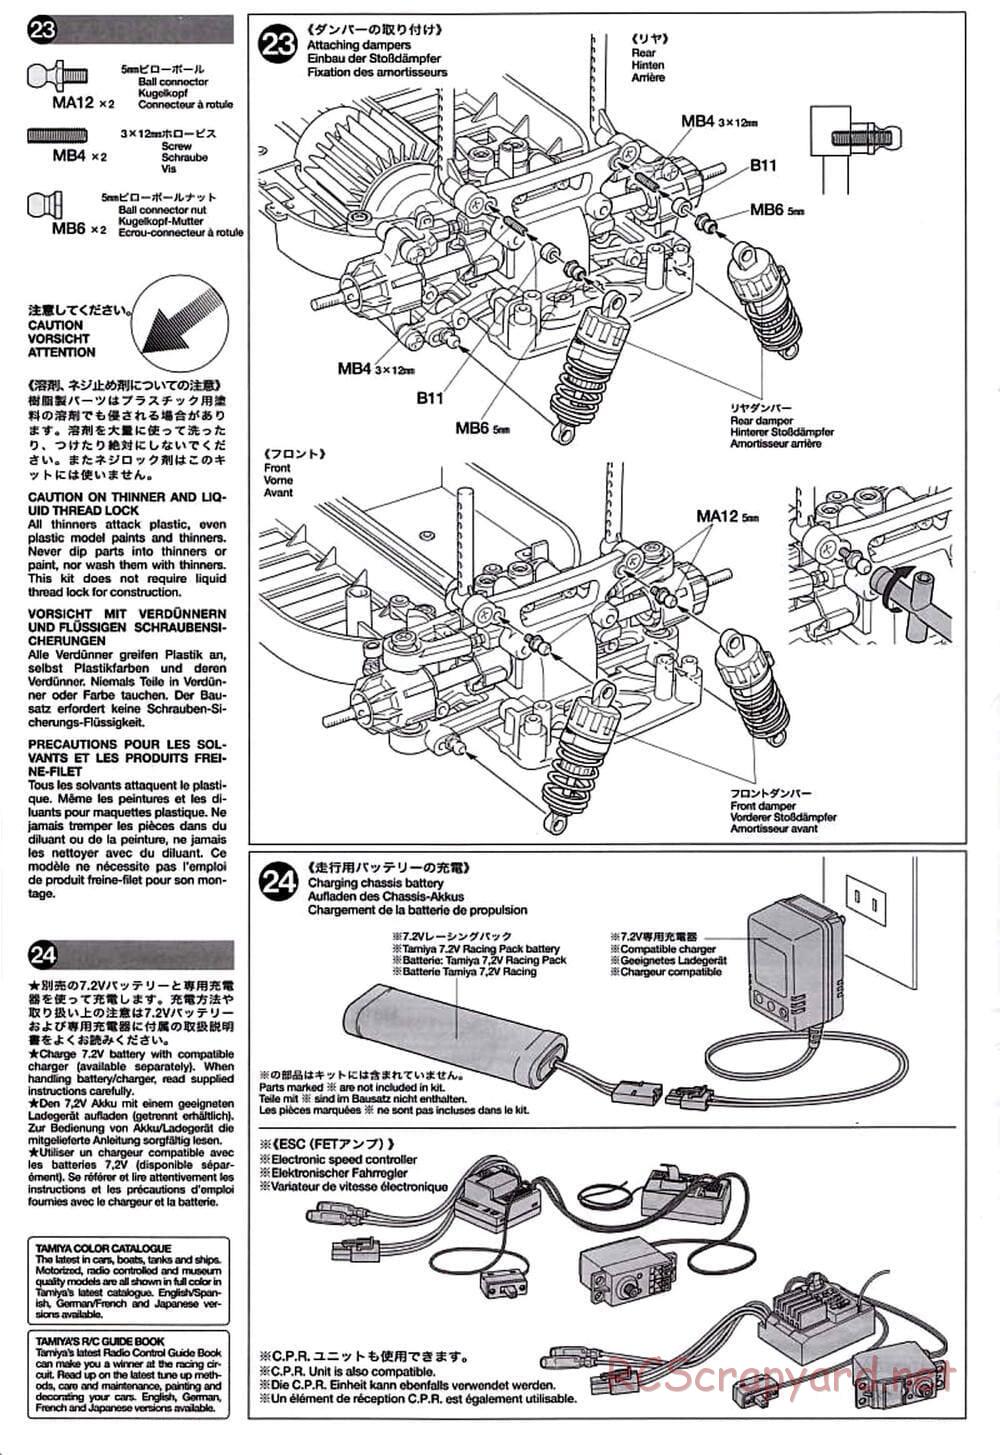 Tamiya - TT-01D Chassis - Manual - Page 12